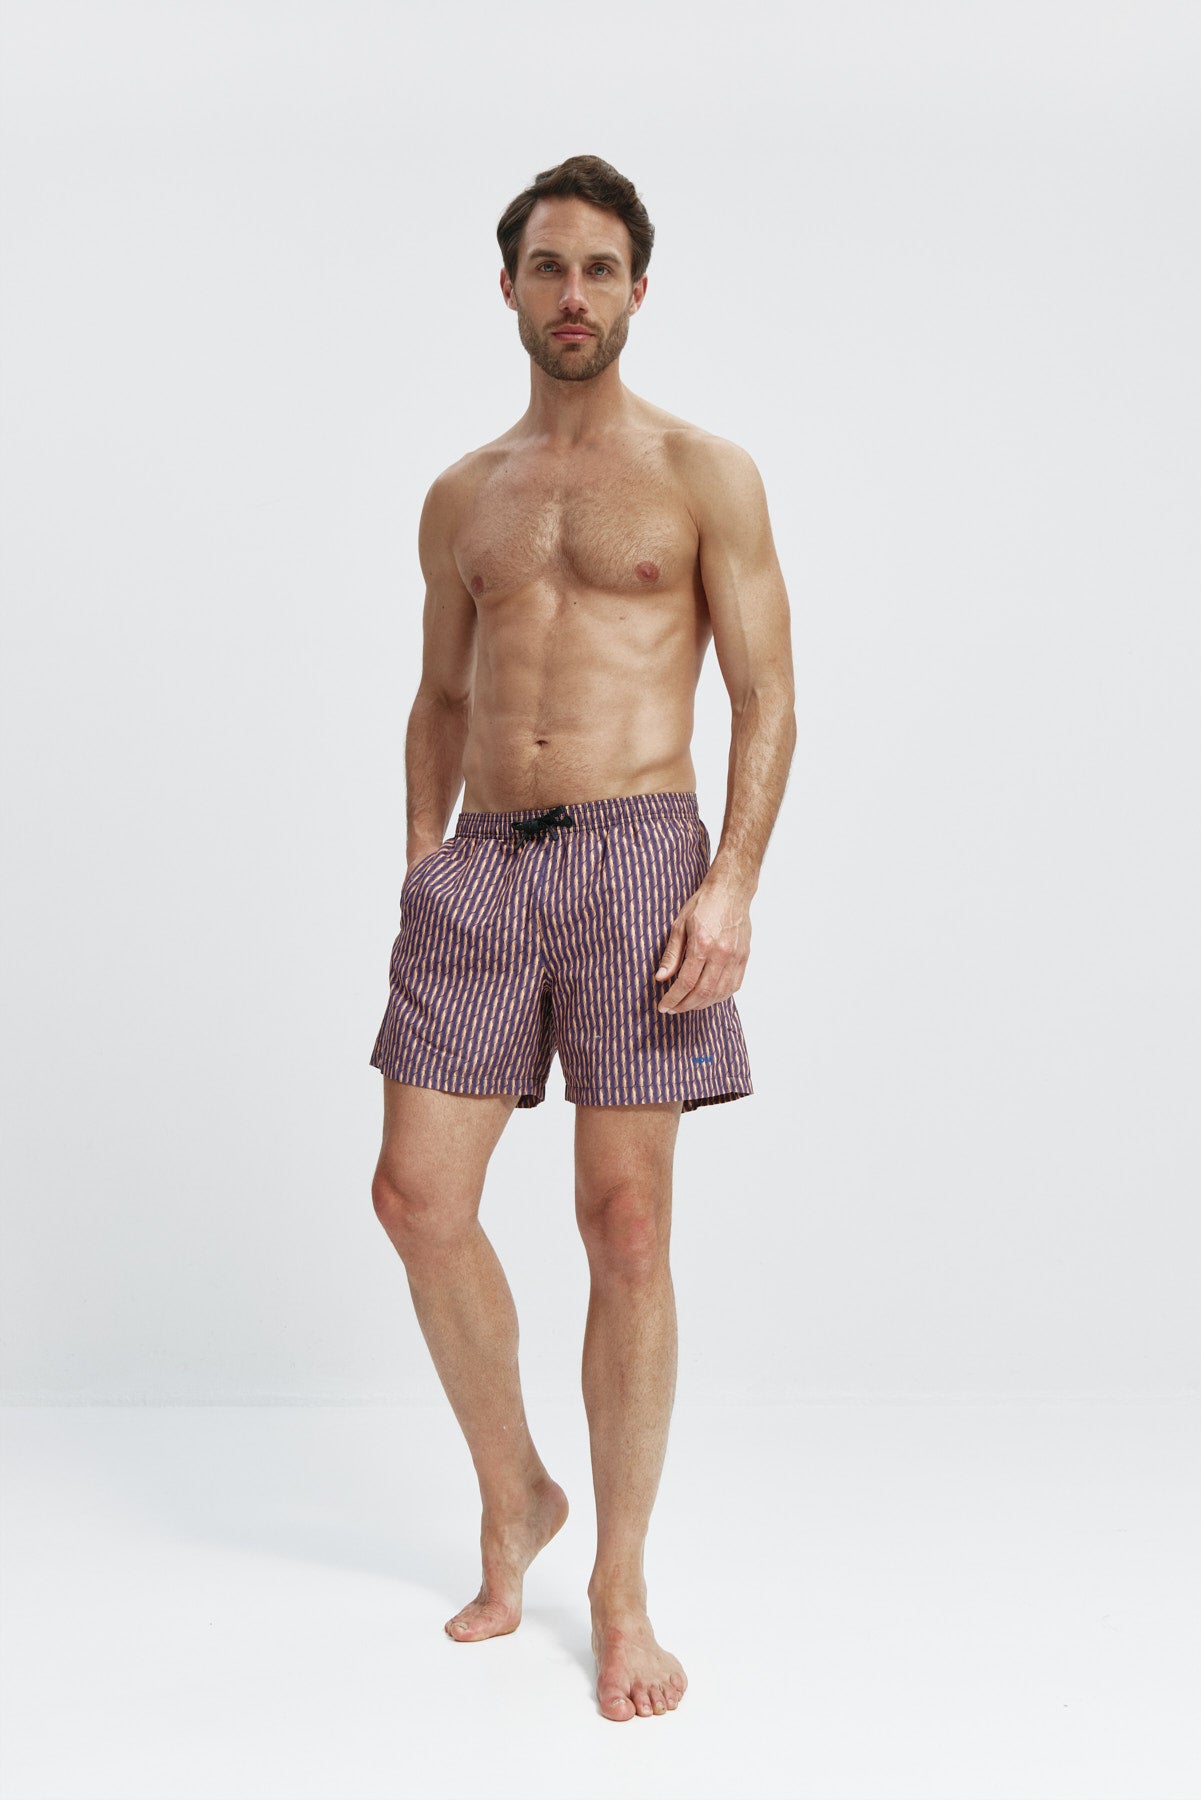 Bañador de hombre con estampado espiral,secado rápido, protección UV50+, ligero, resistente y cómodo. Foto cuerpo entero